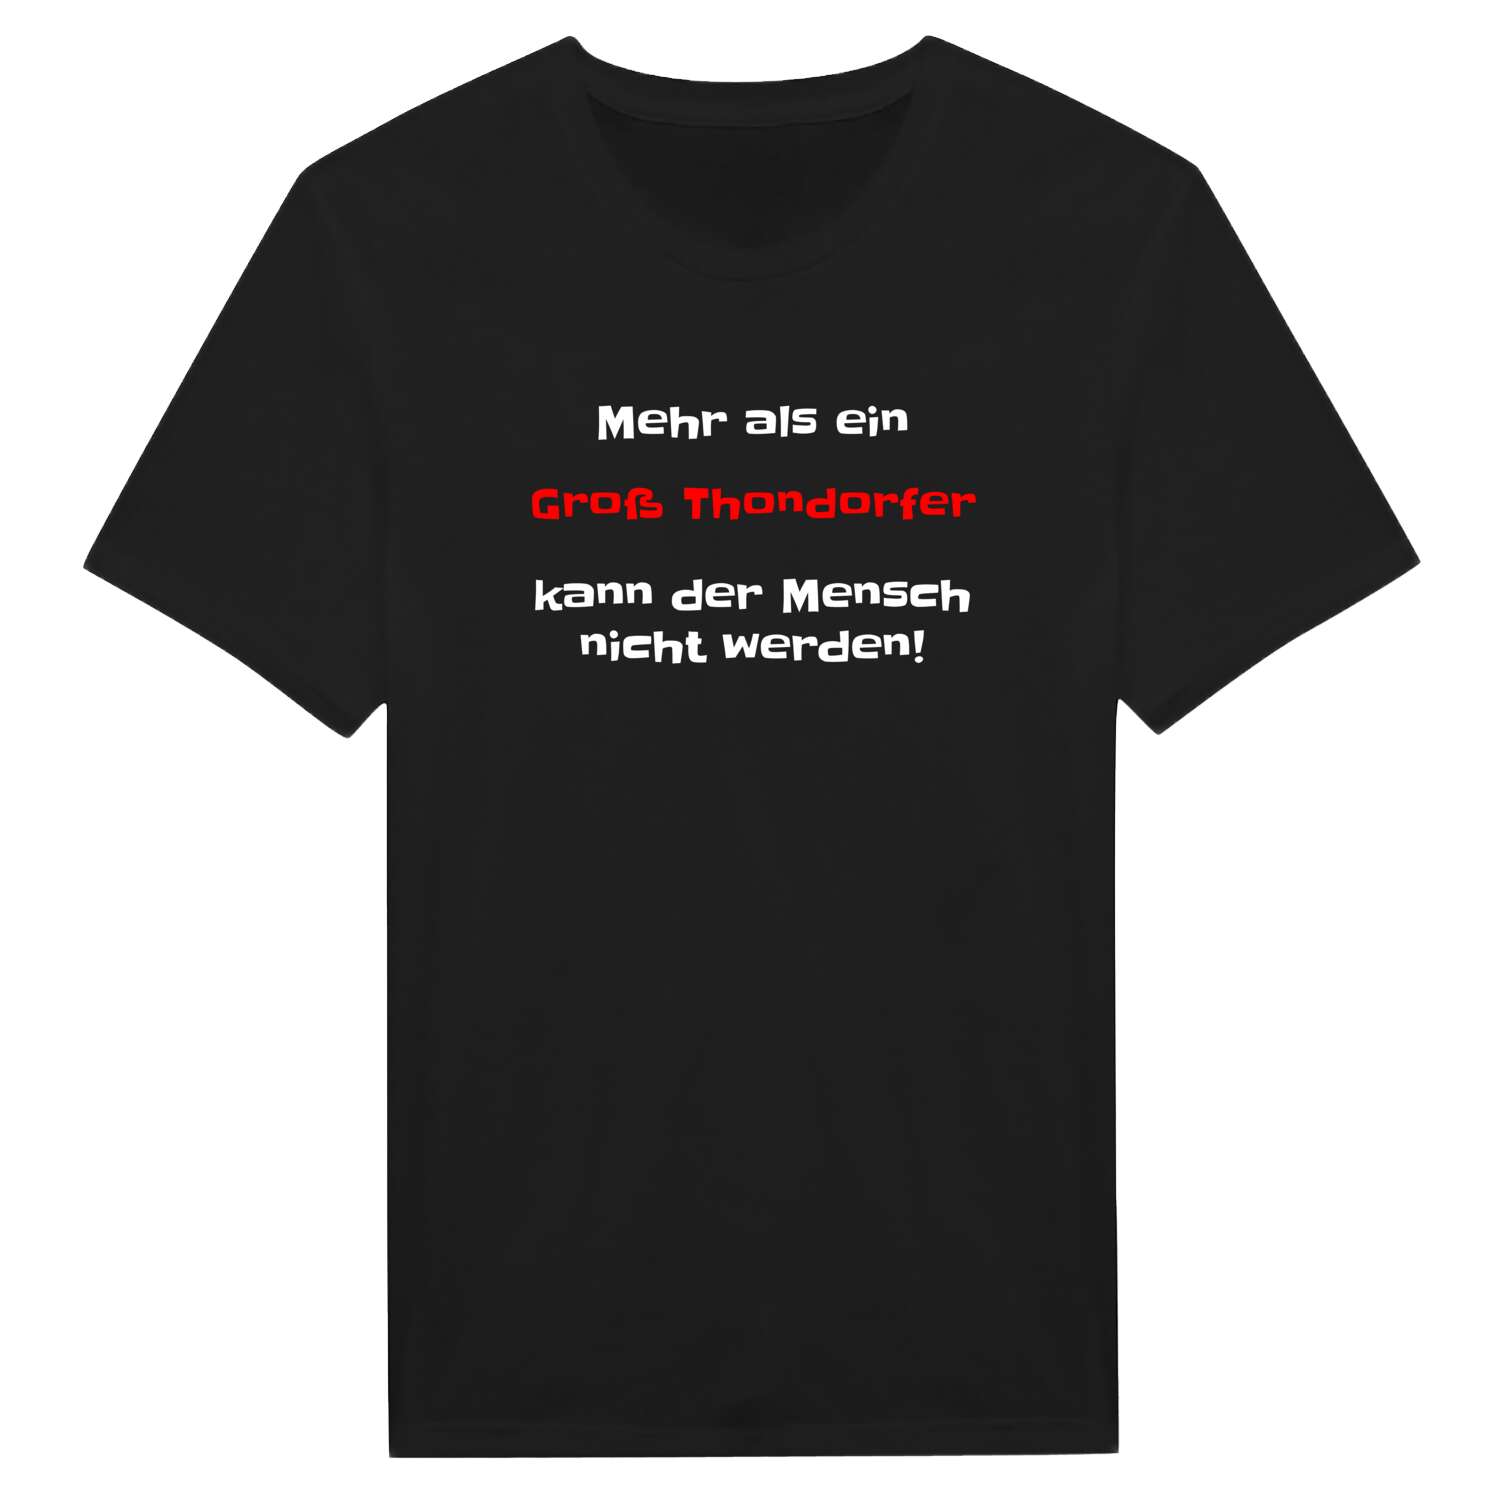 Groß Thondorf T-Shirt »Mehr als ein«